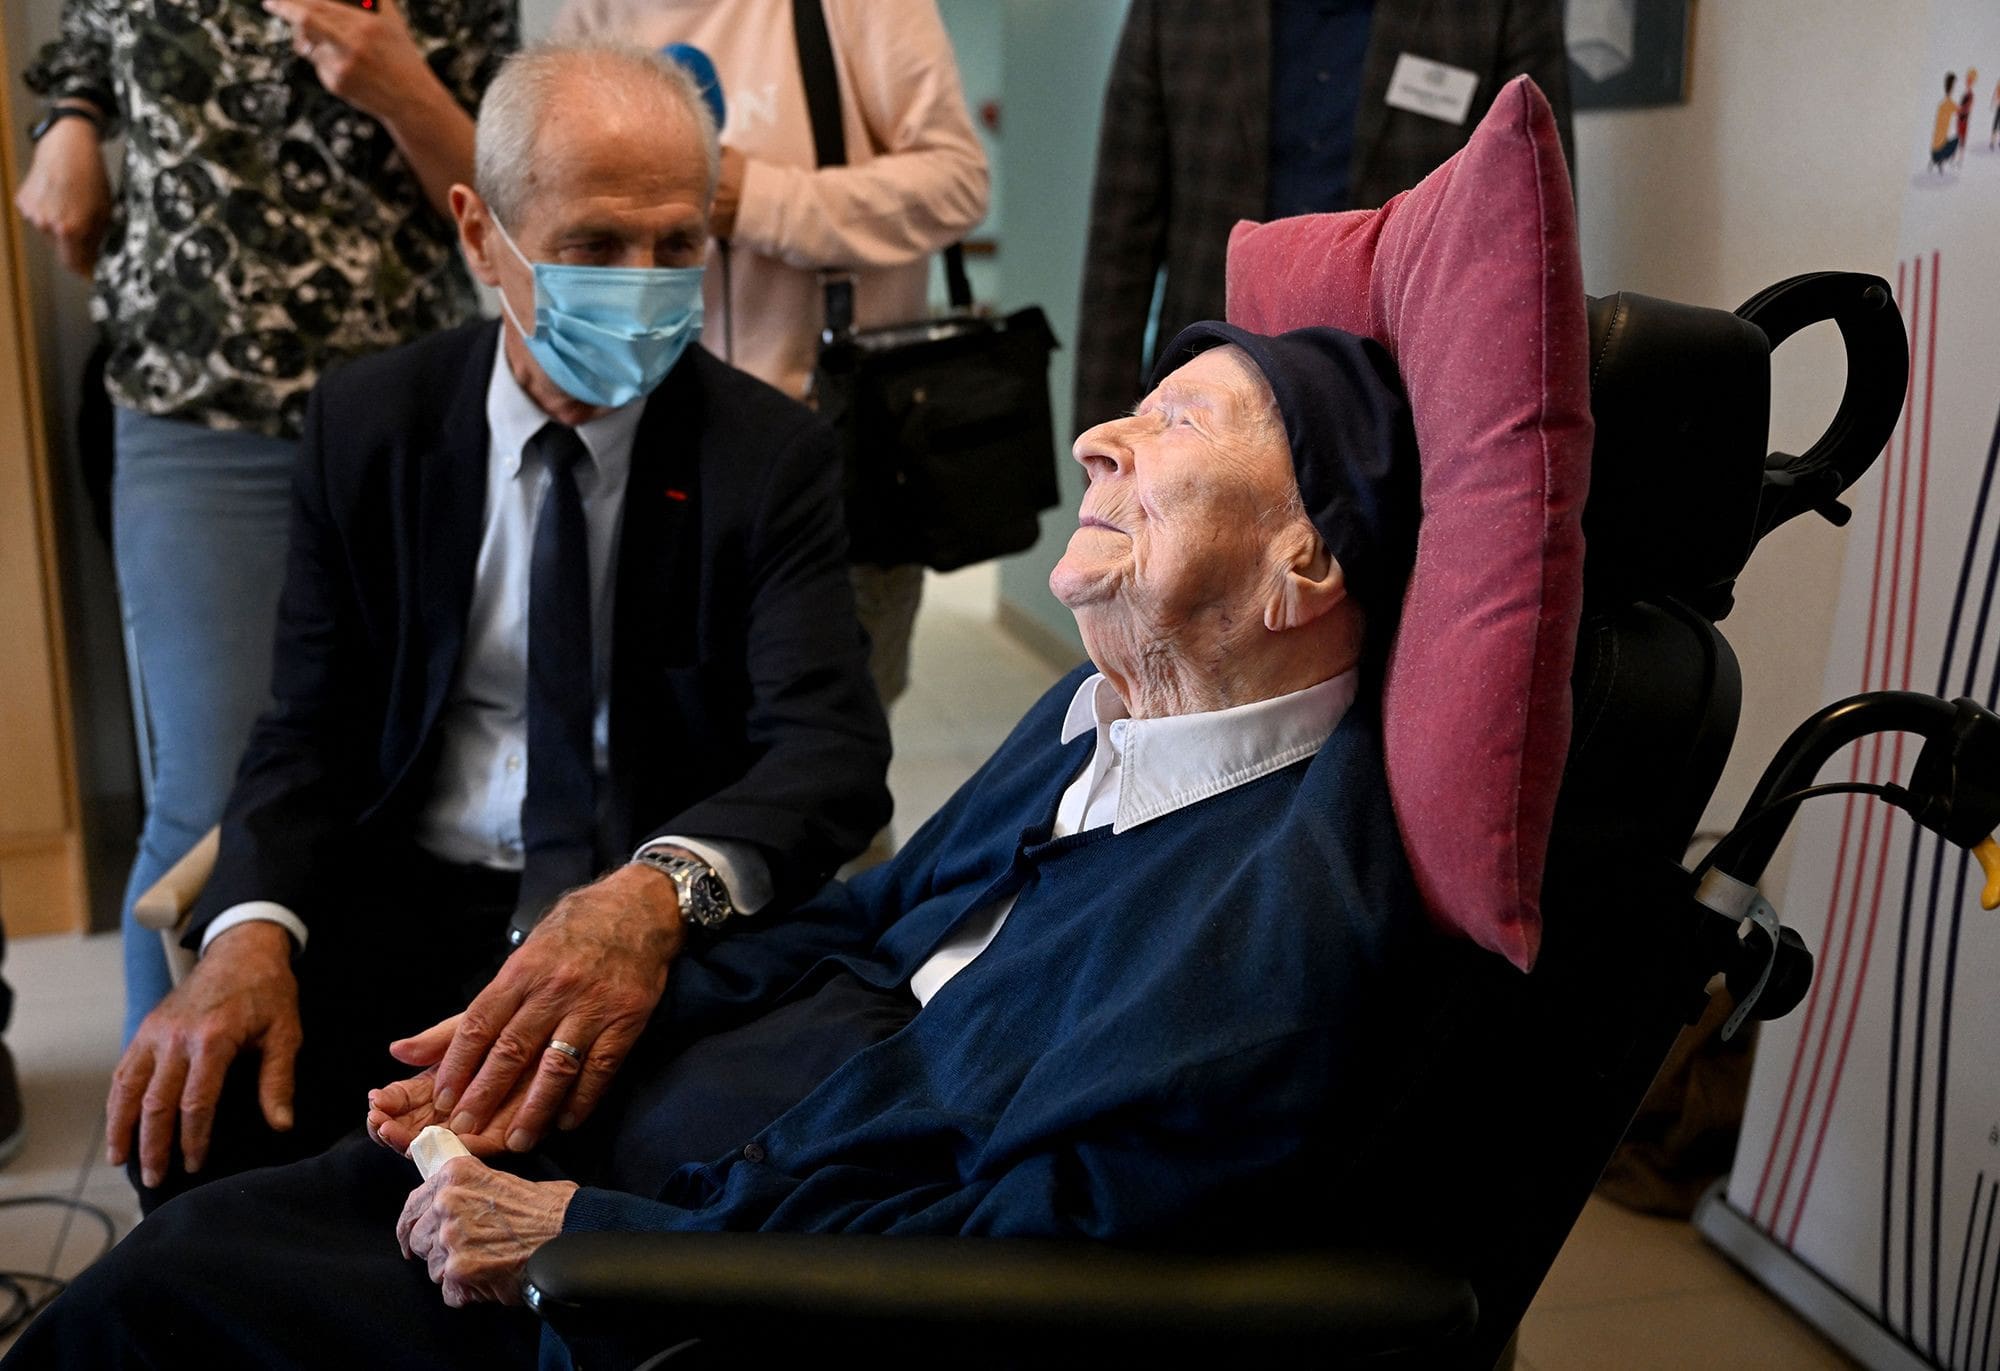 Tu thoi tre min - Bí quyết sống thọ 118 tuổi của cụ bà người Pháp: Không bao giờ ngồi ăn một mình